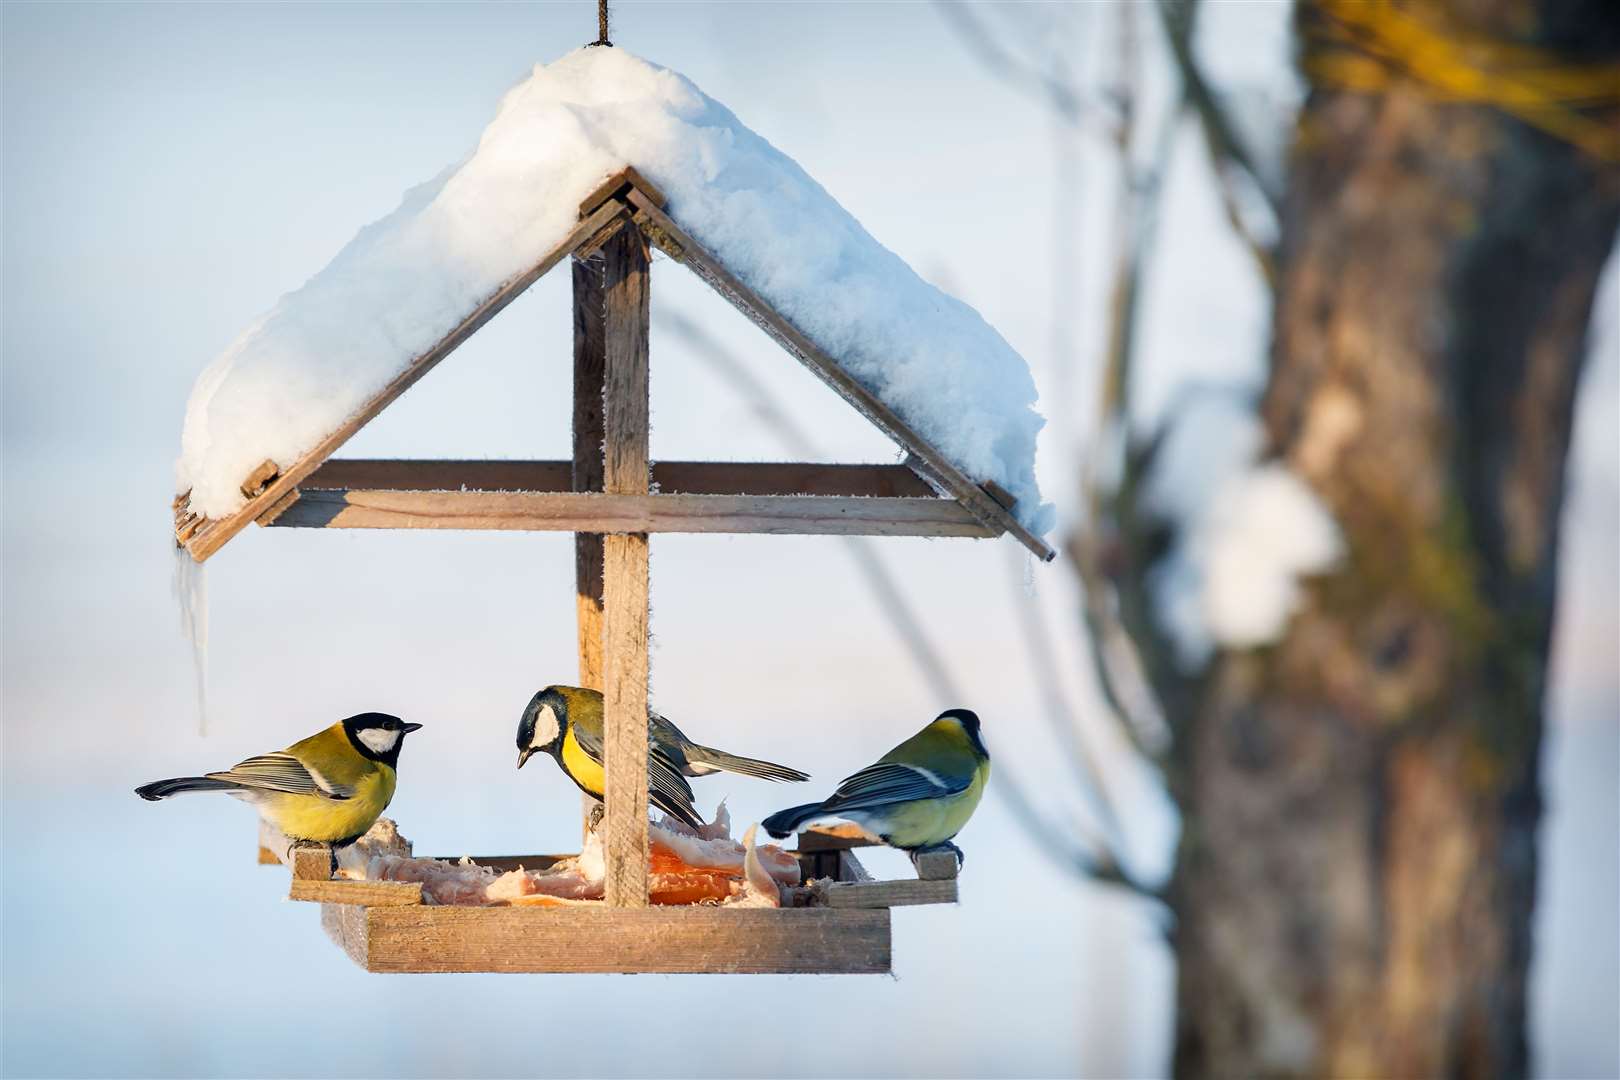 Three tits in a snowy winter bird feeder eating pork fat.